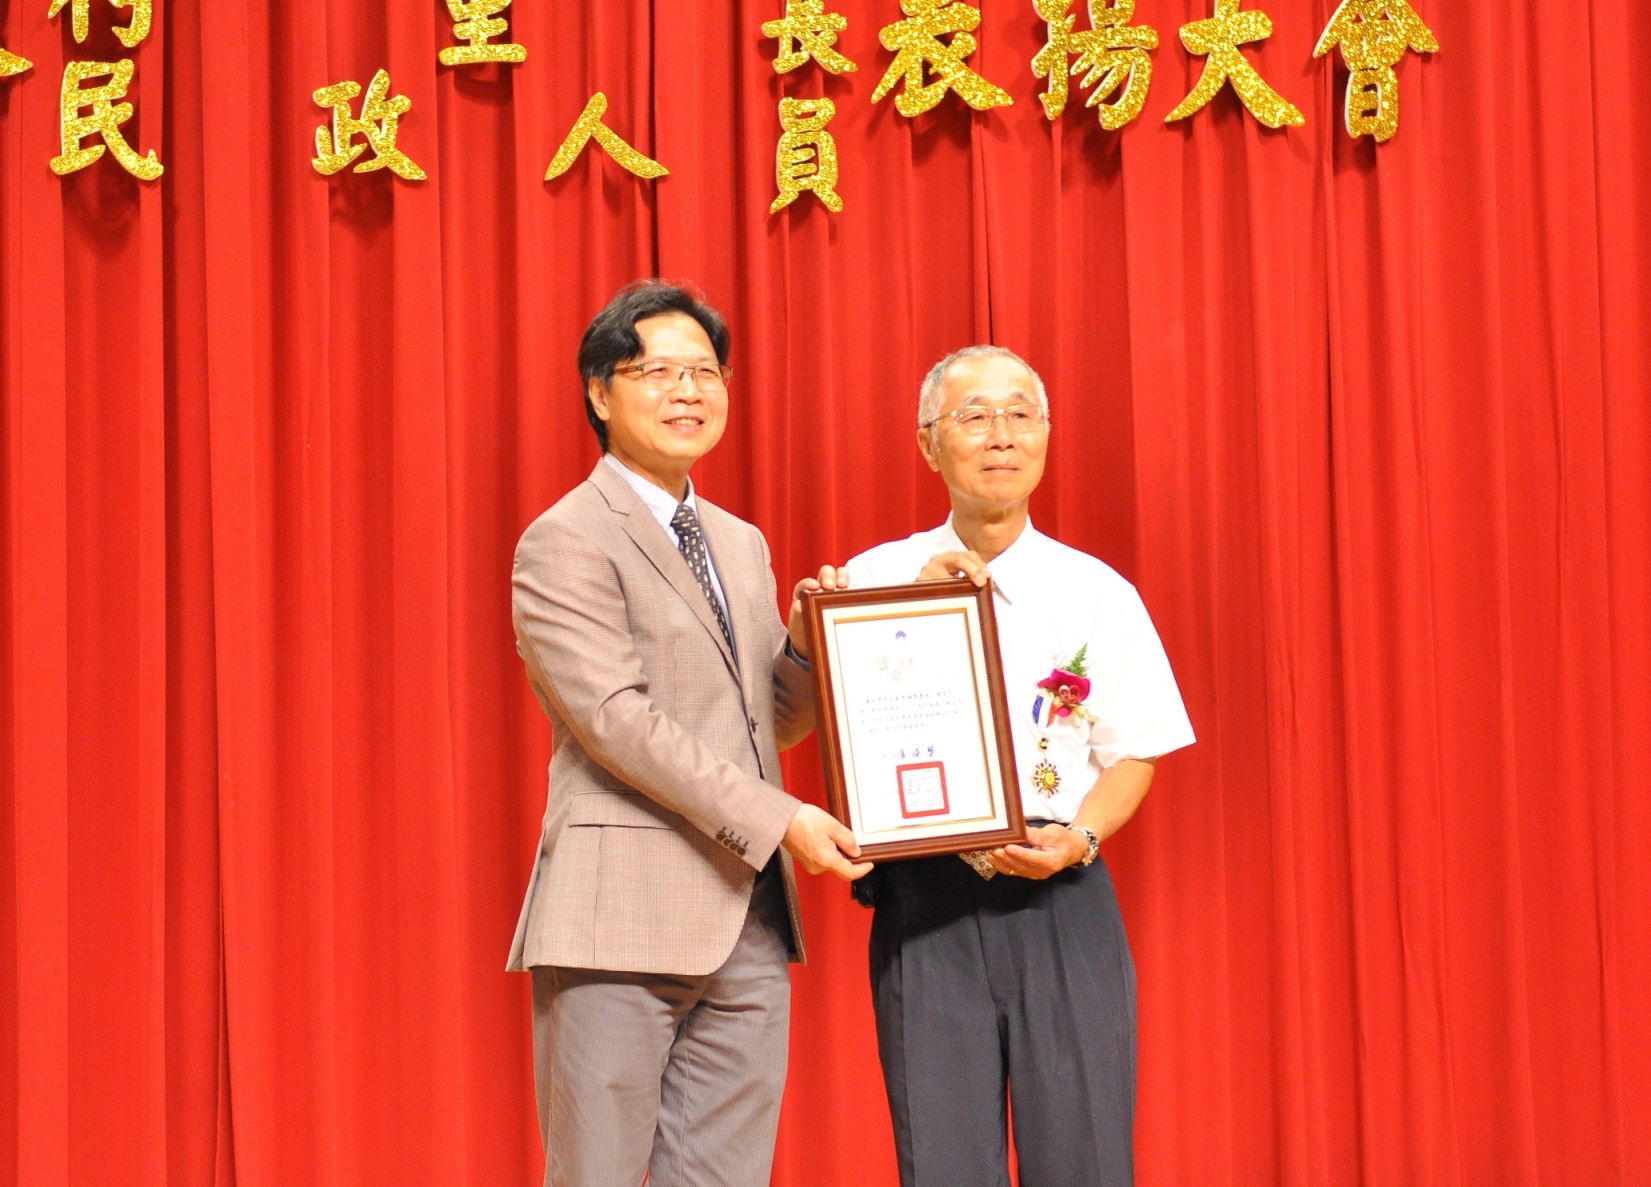 內政部長葉俊榮頒獎表揚服務超過40年的臺北市中正區幸福里蘇宏仁里長